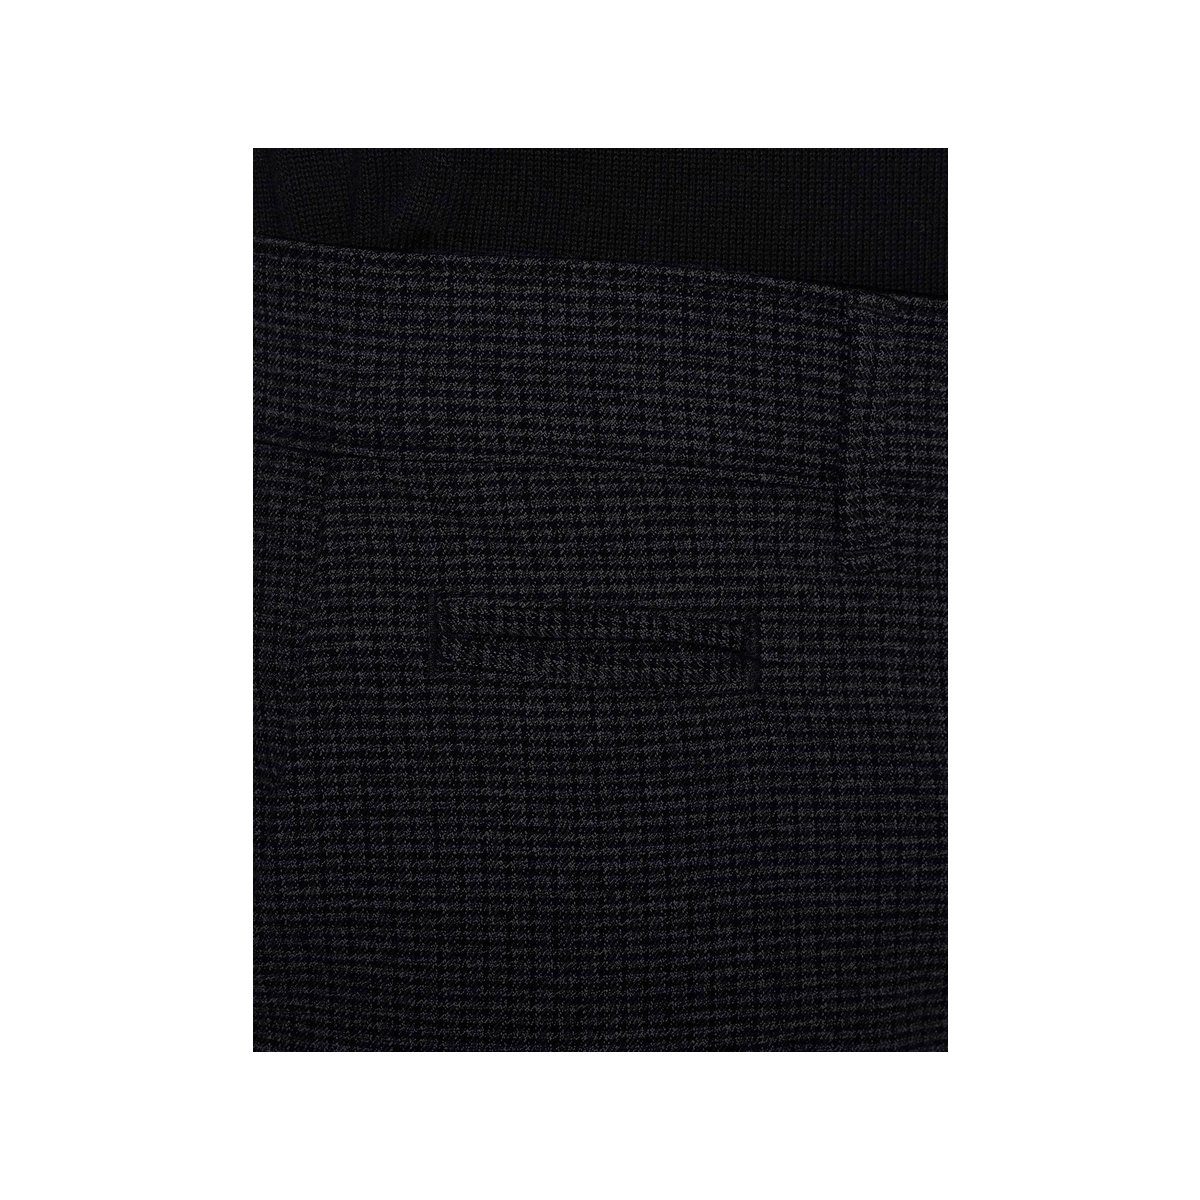 Pierre Cardin 5-Pocket-Jeans marineblau unbekannt (1-tlg)